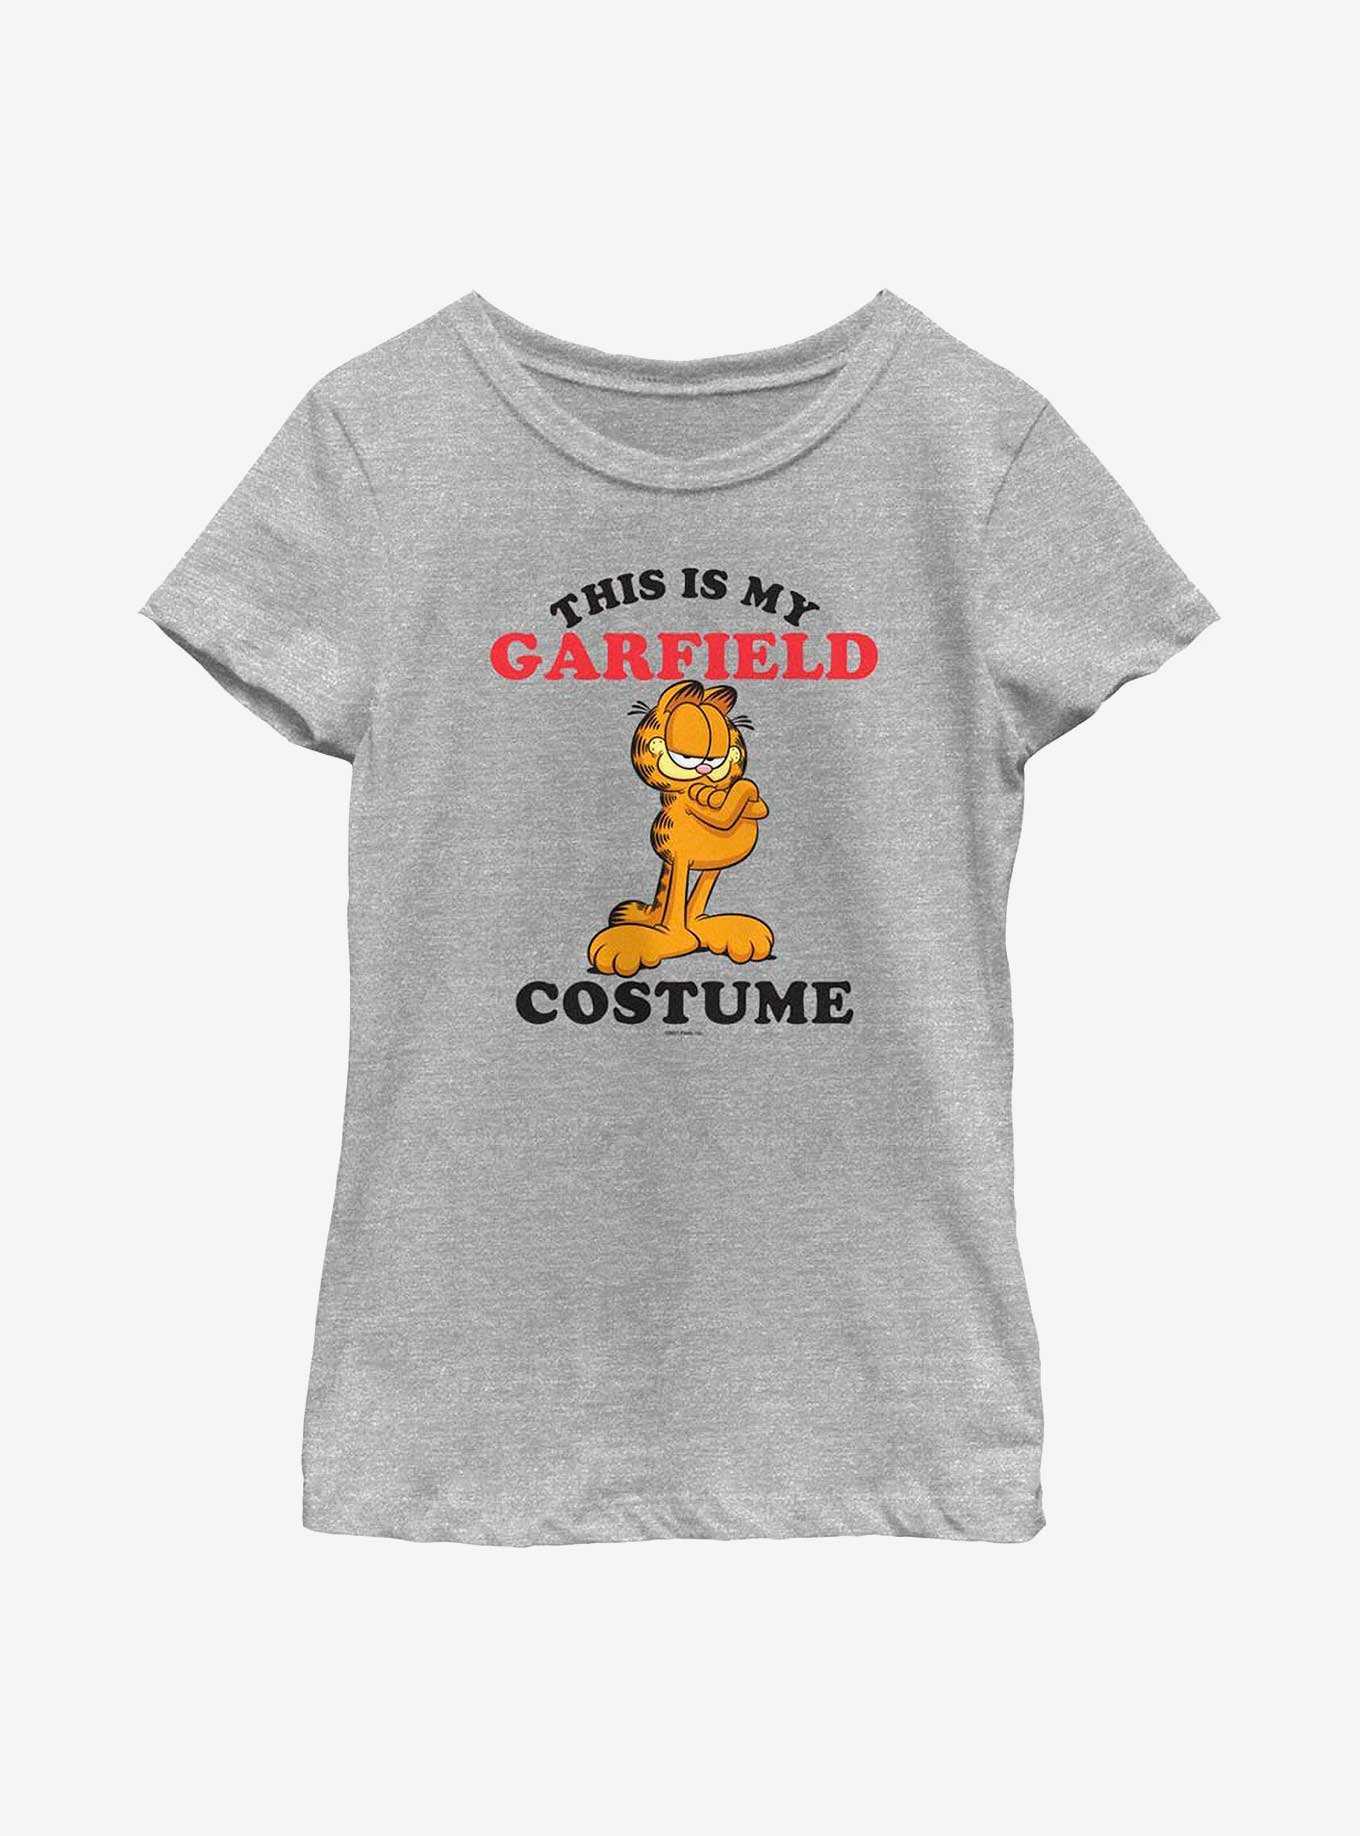 Garfield Garfield Costume Youth Girl's T-Shirt, , hi-res